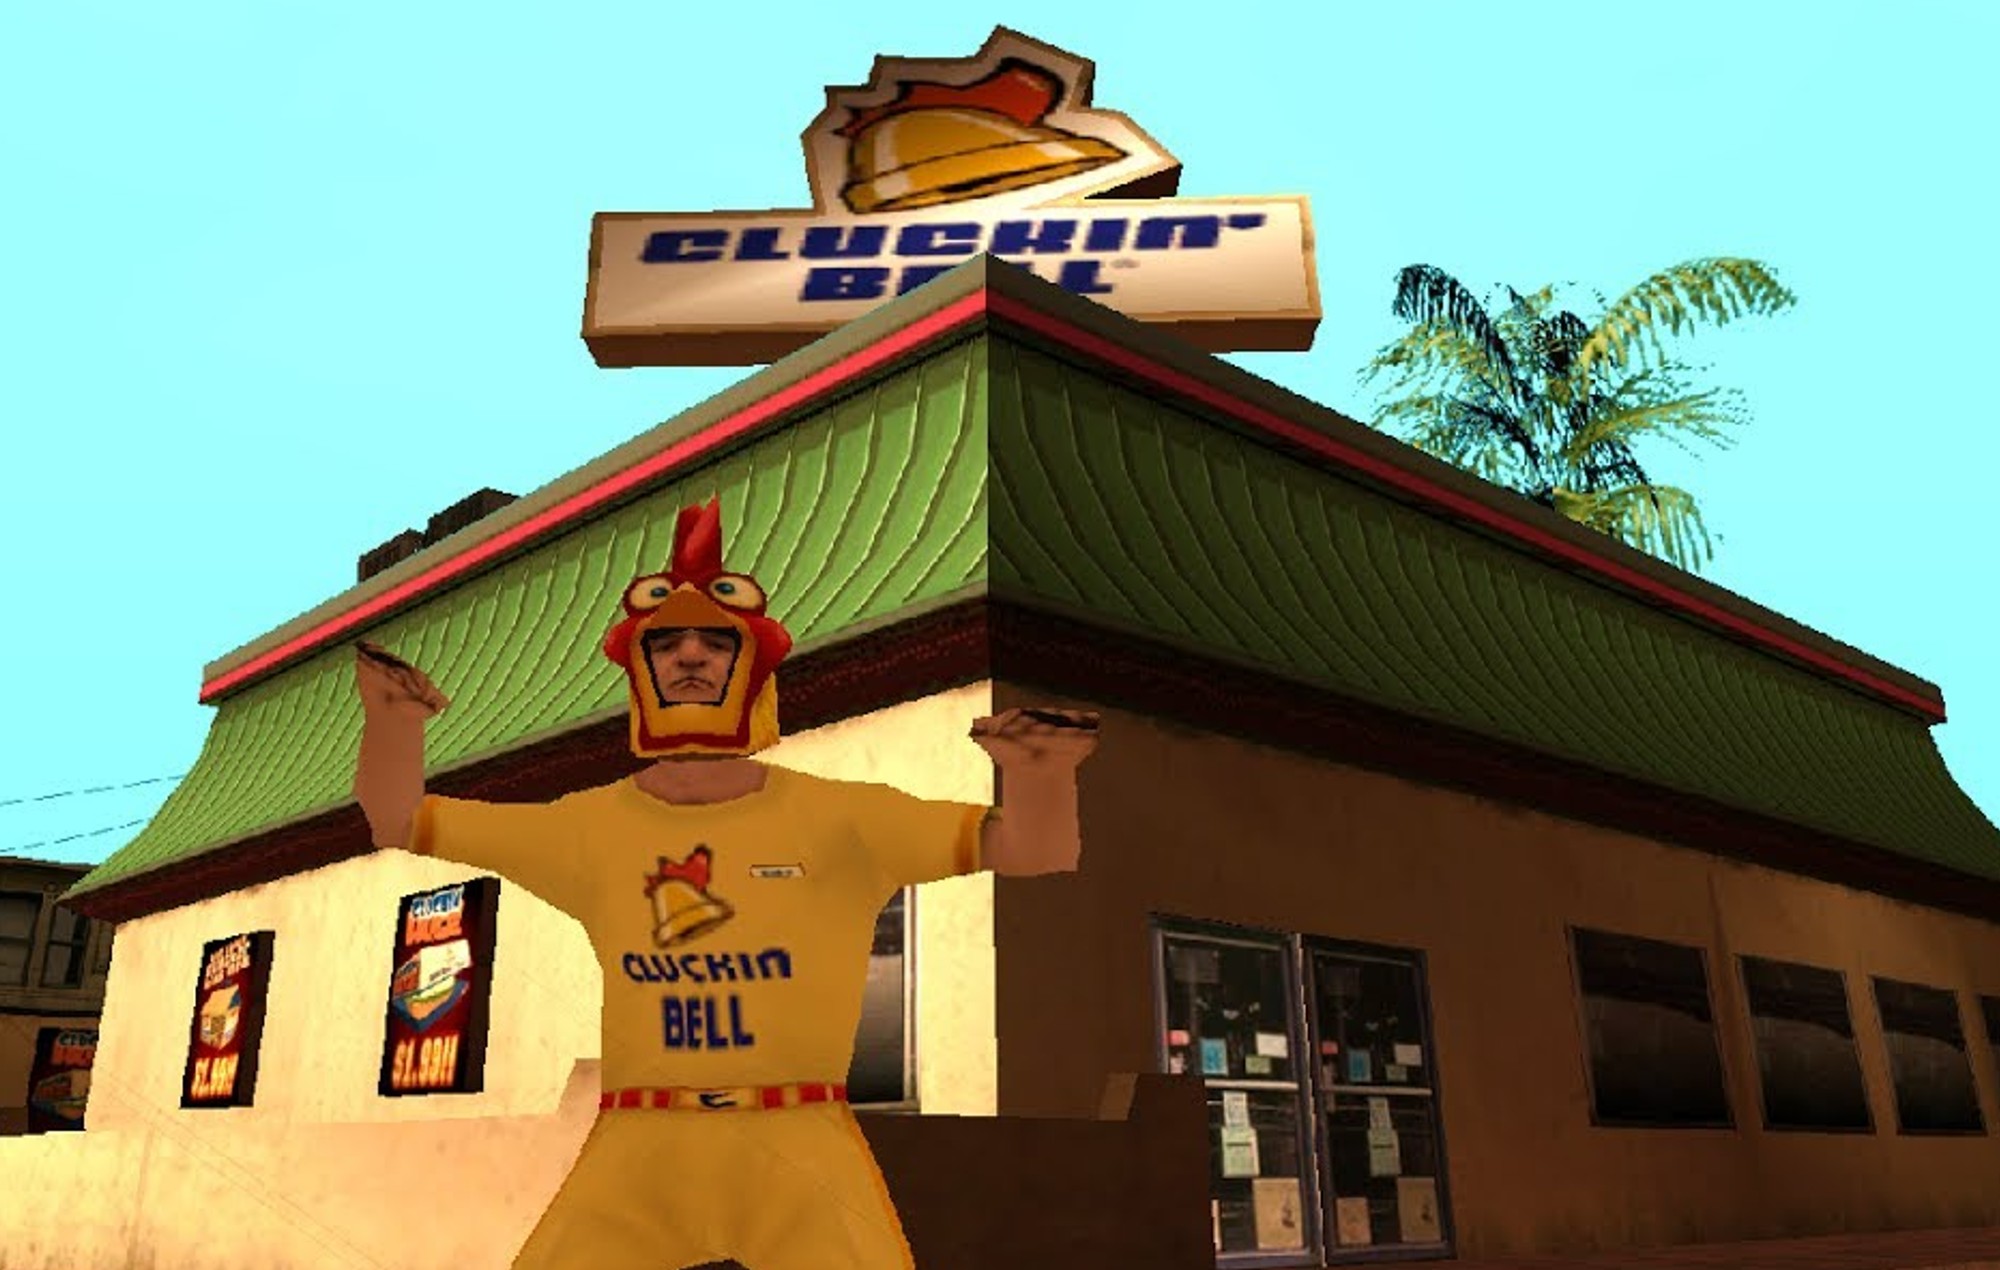 Le restaurant 'Grand Theft Auto' Cluckin' Bell a émis un cesser et s'abstenir